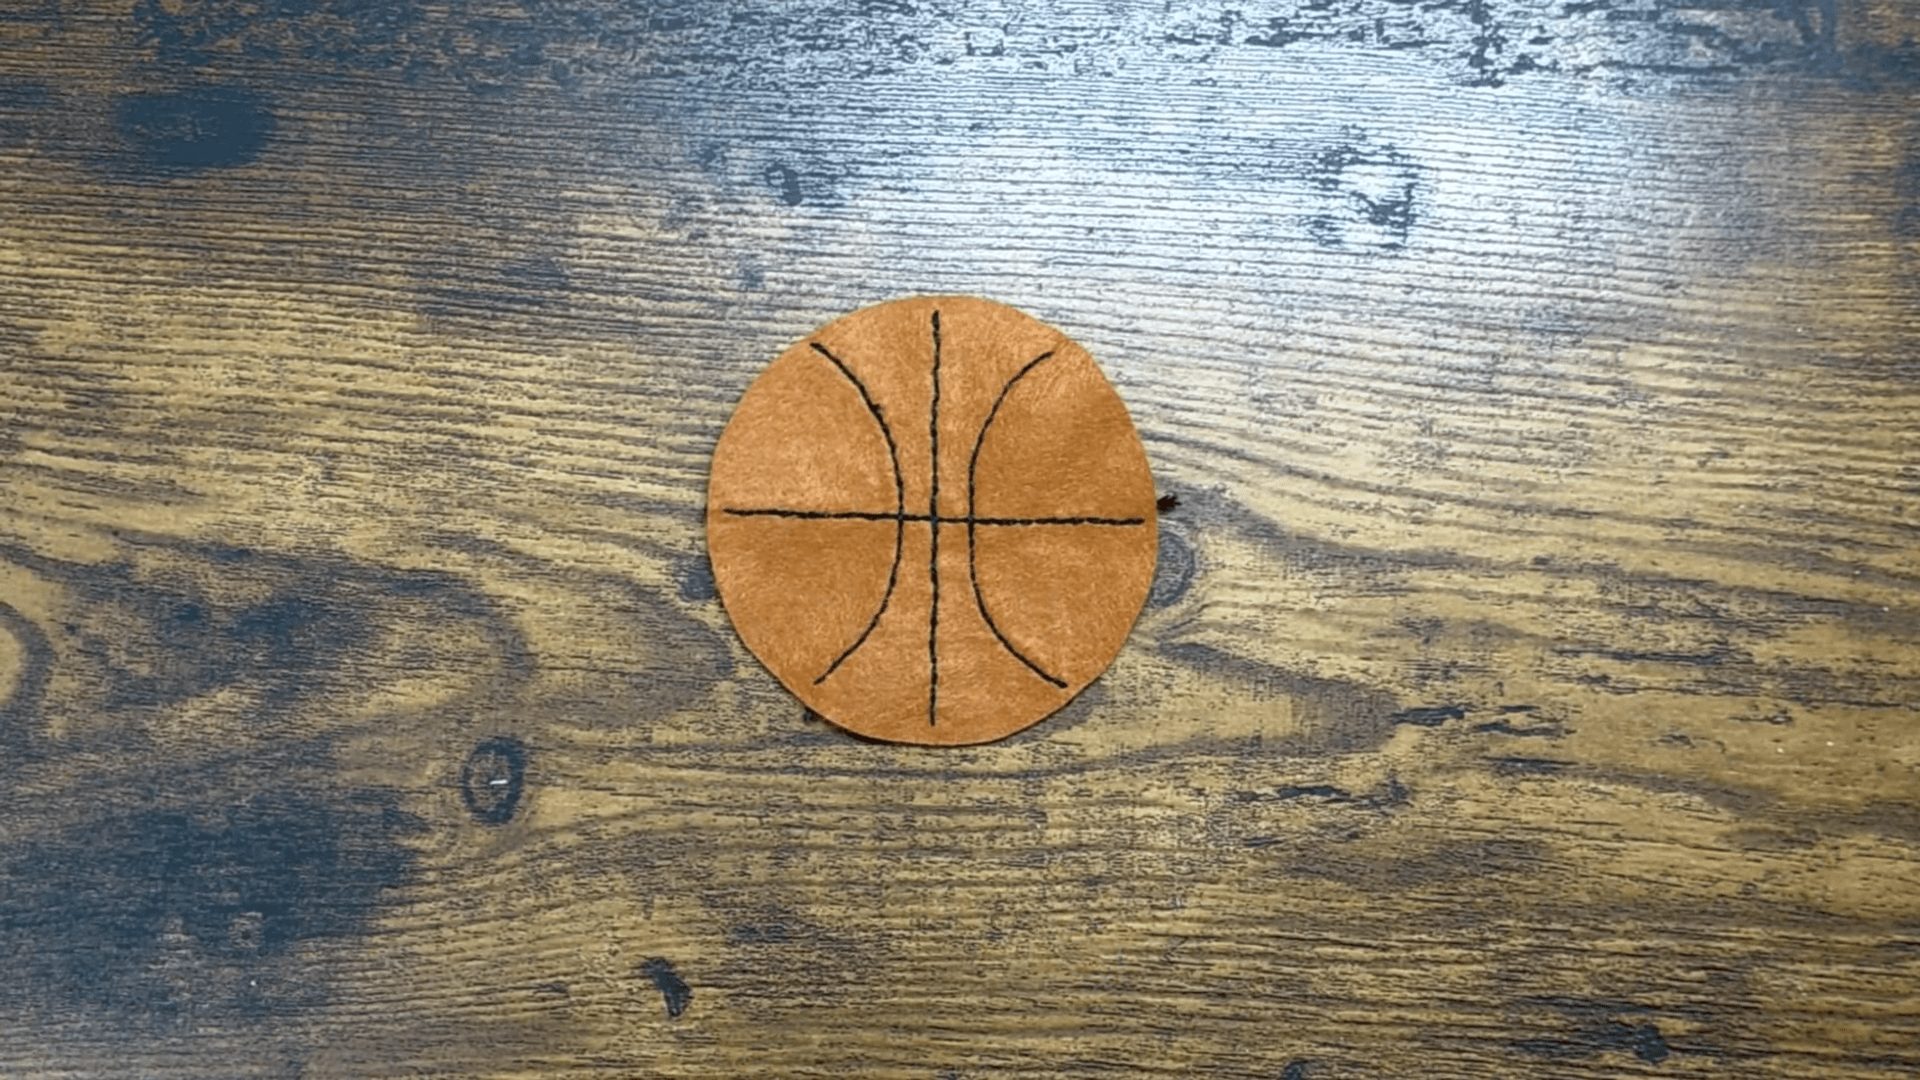 バスケットボールの刺繍ができた図